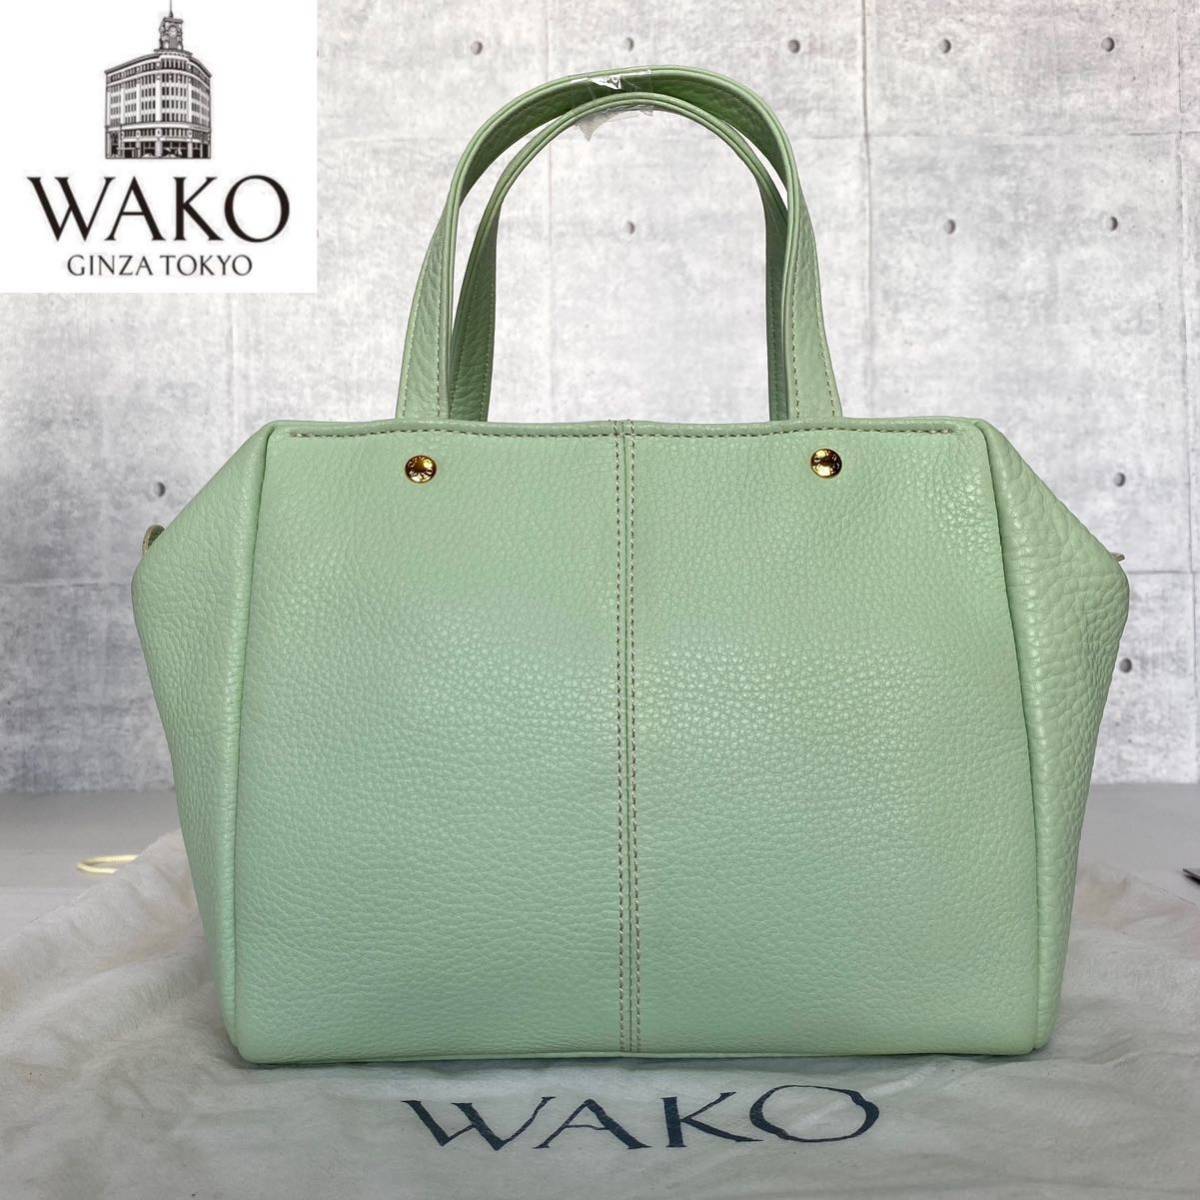 未使用級 WAKO ワコウ 銀座 和光 シボ革 レザー パステルグリーン ゴールド金具 ハンドバッグ トートバッグ ショルダーバッグ